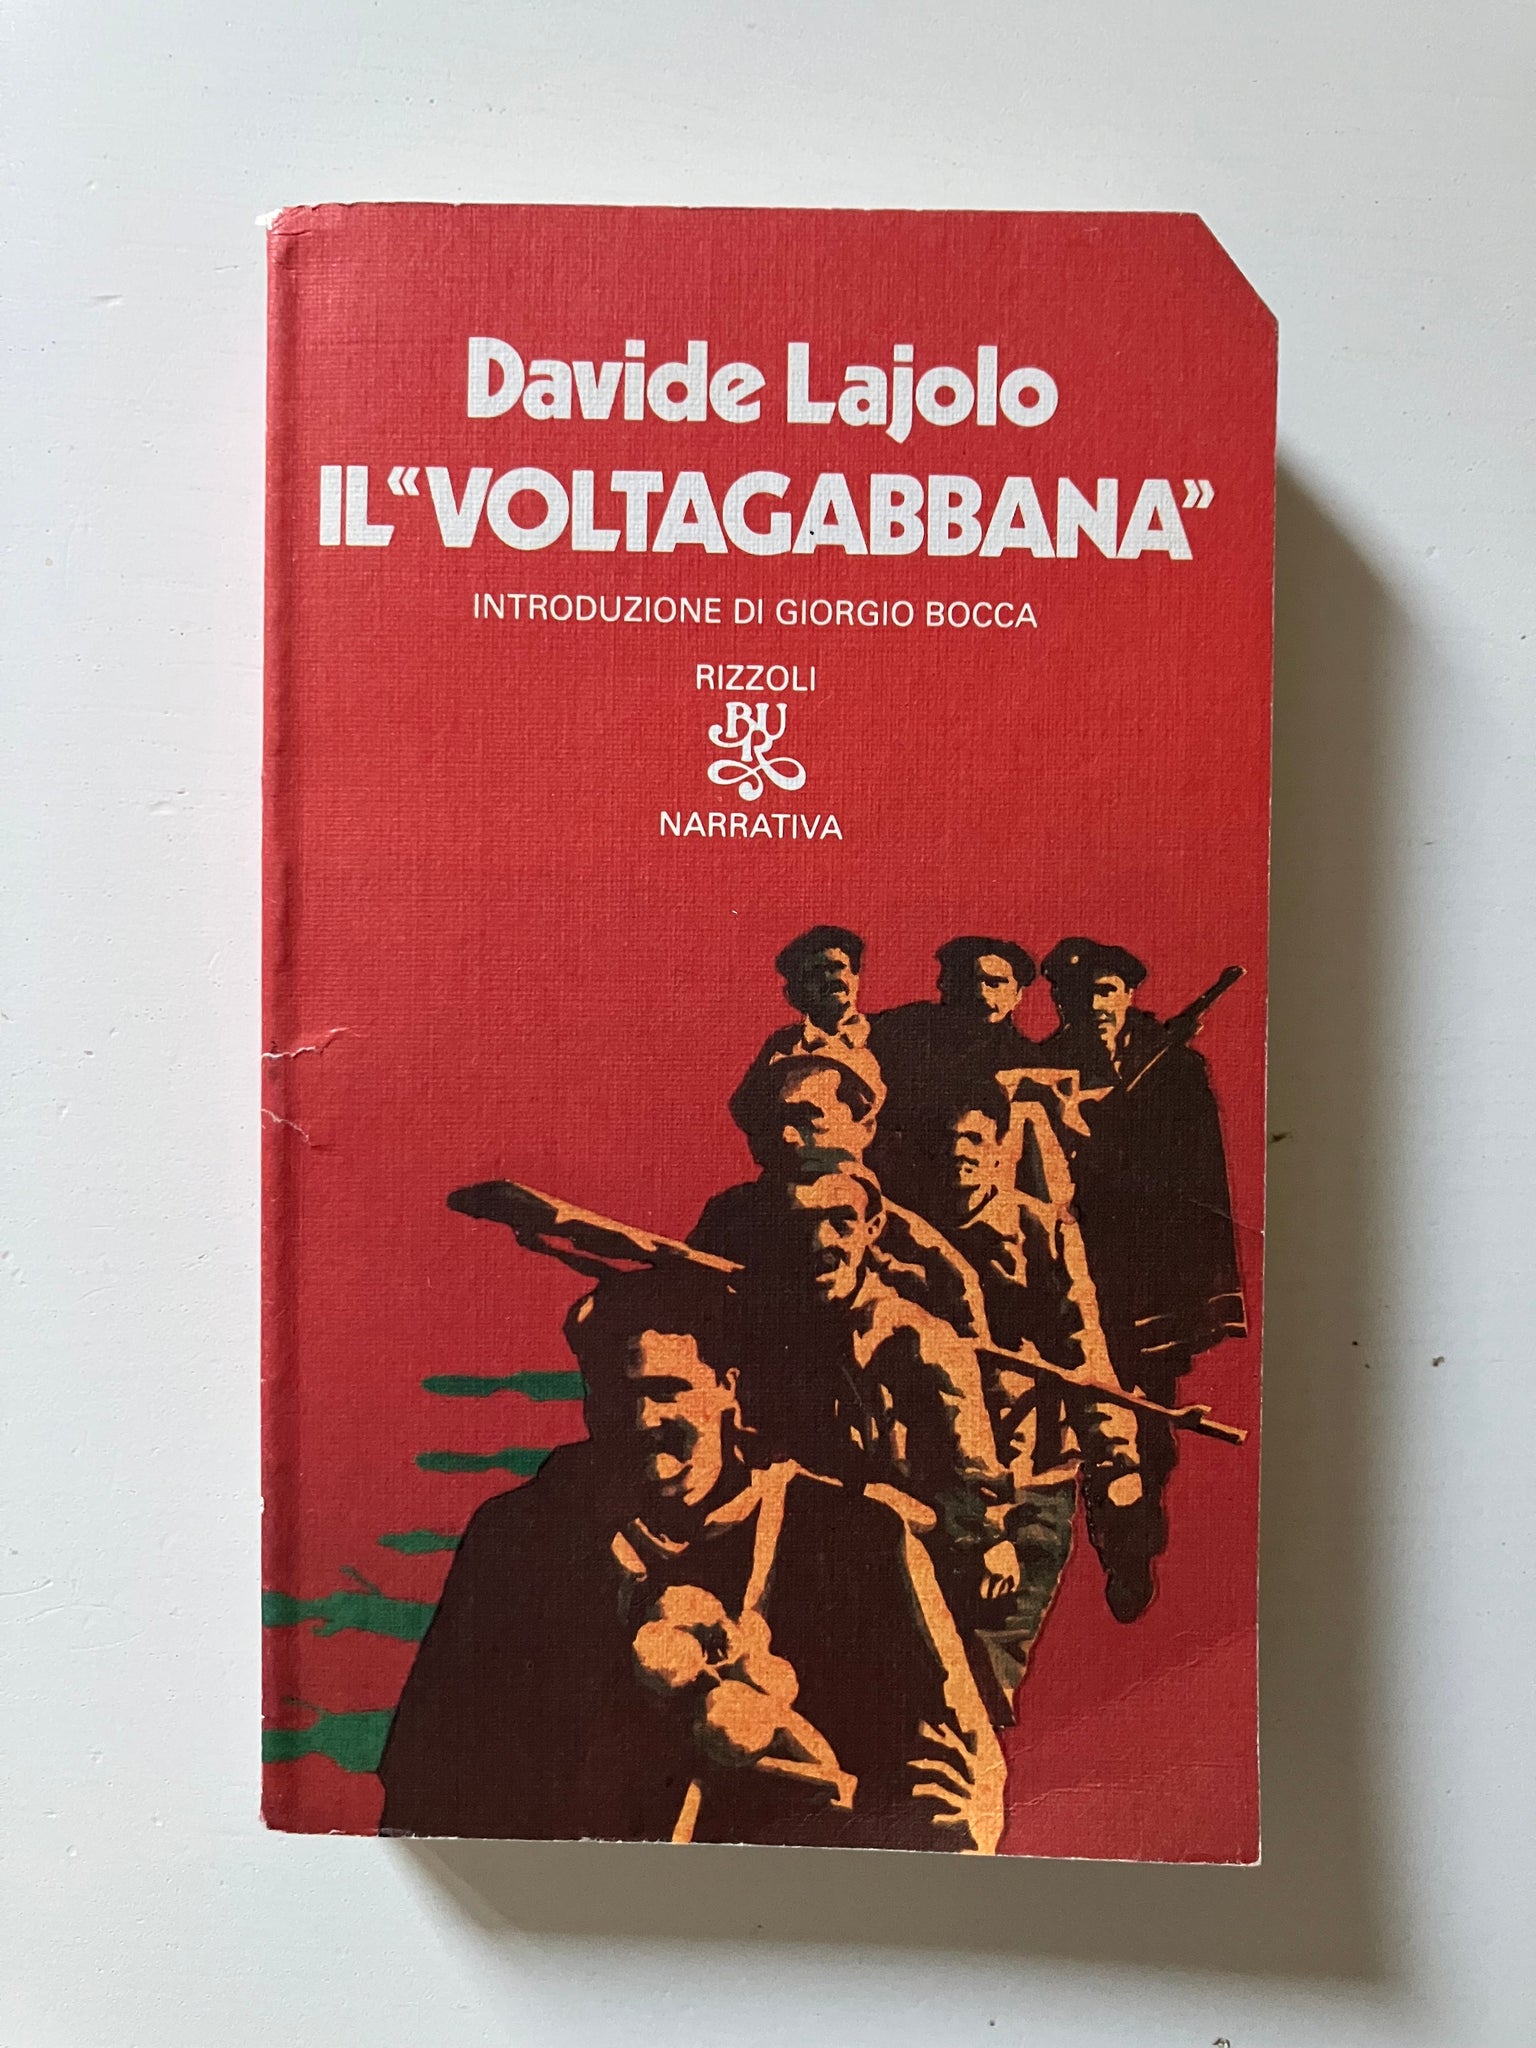 Davide Lajolo - Il Voltagabbana